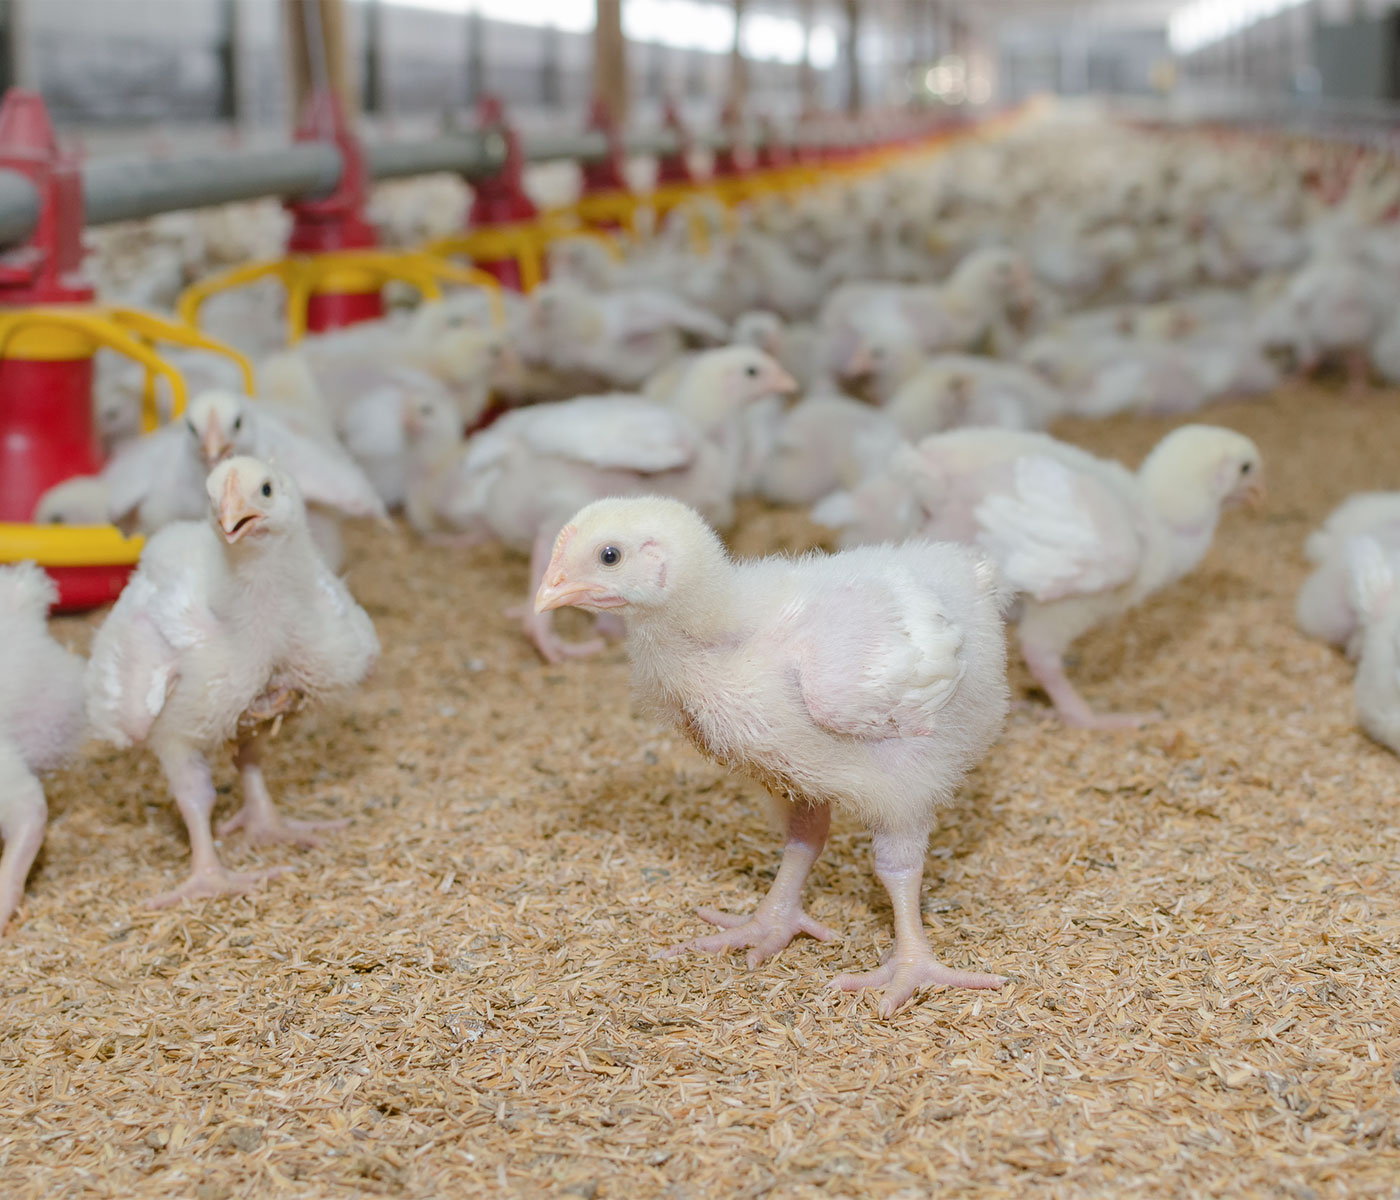 La avicultura europea pone el foco en la sostenibilidad